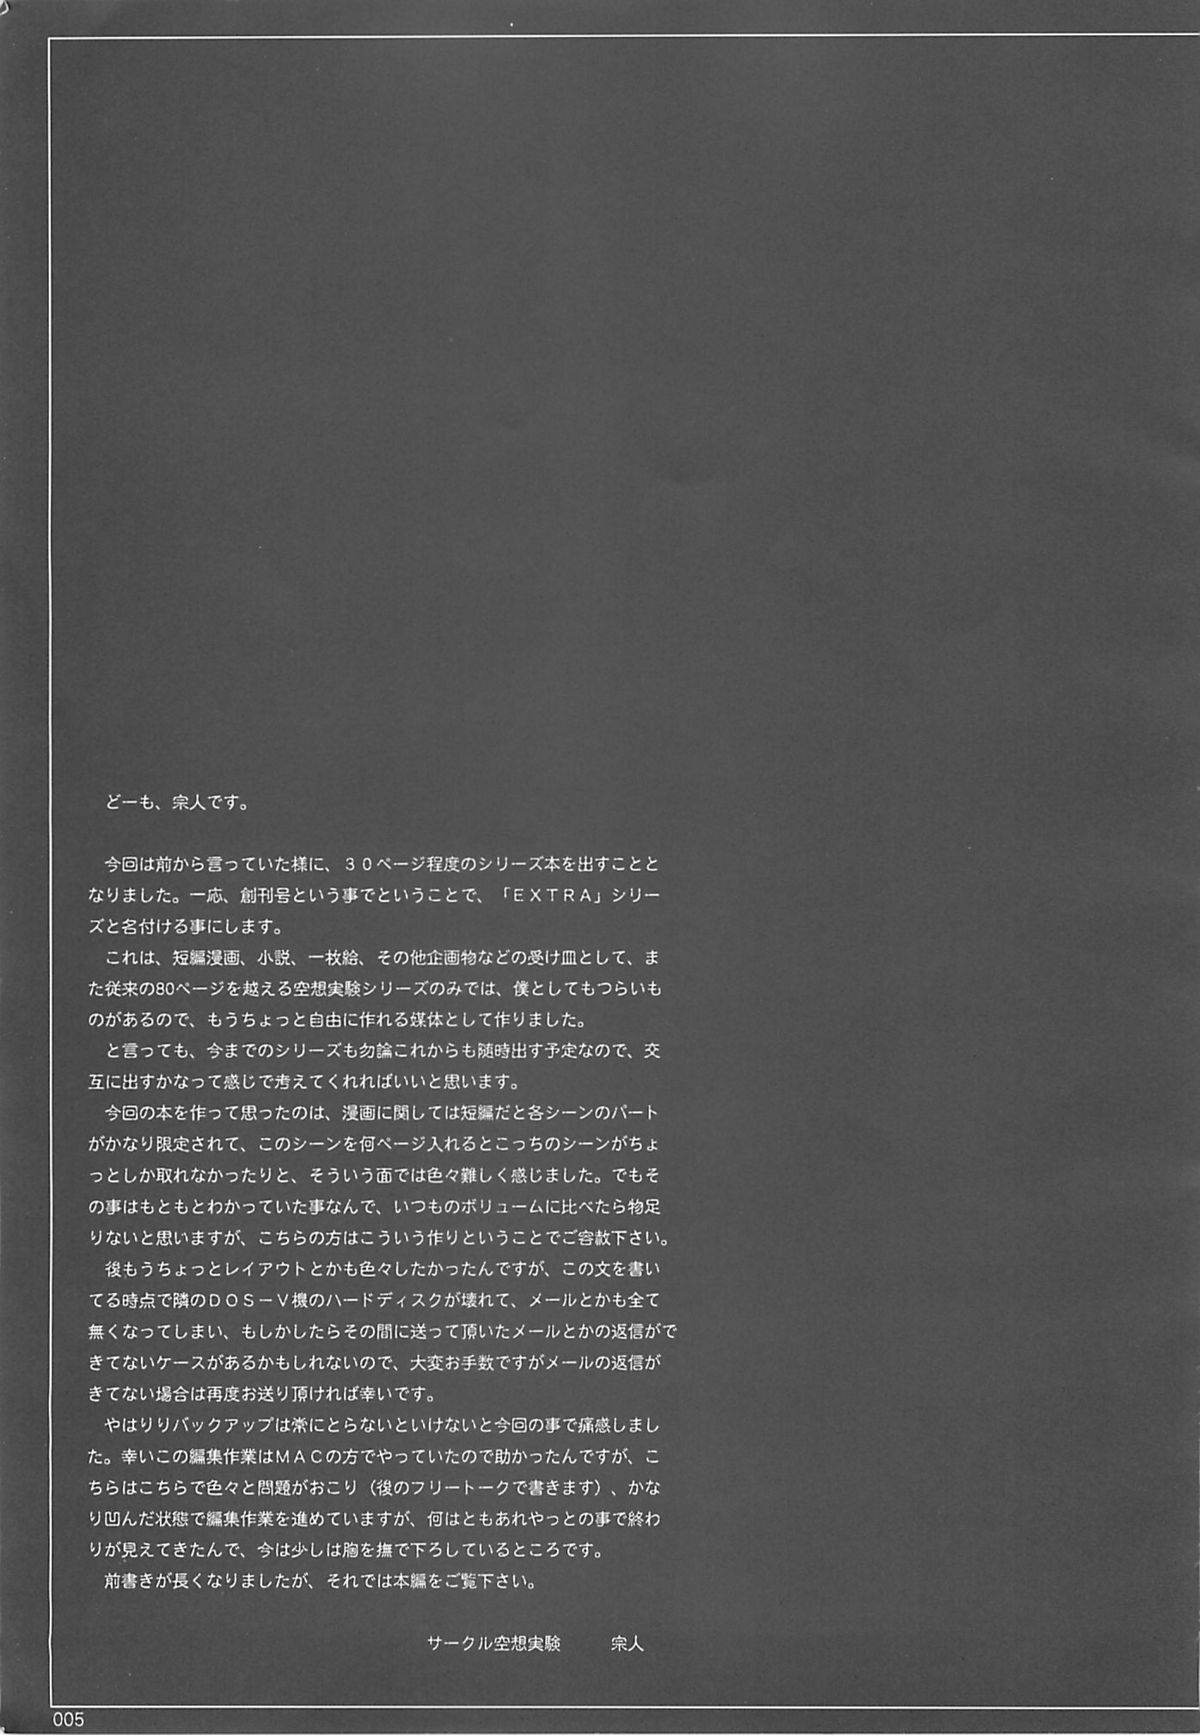 [サークル空想実験 (宗人)] 空想実験 -EXTRA- Vol.1 (ファイナルファンタジーX)